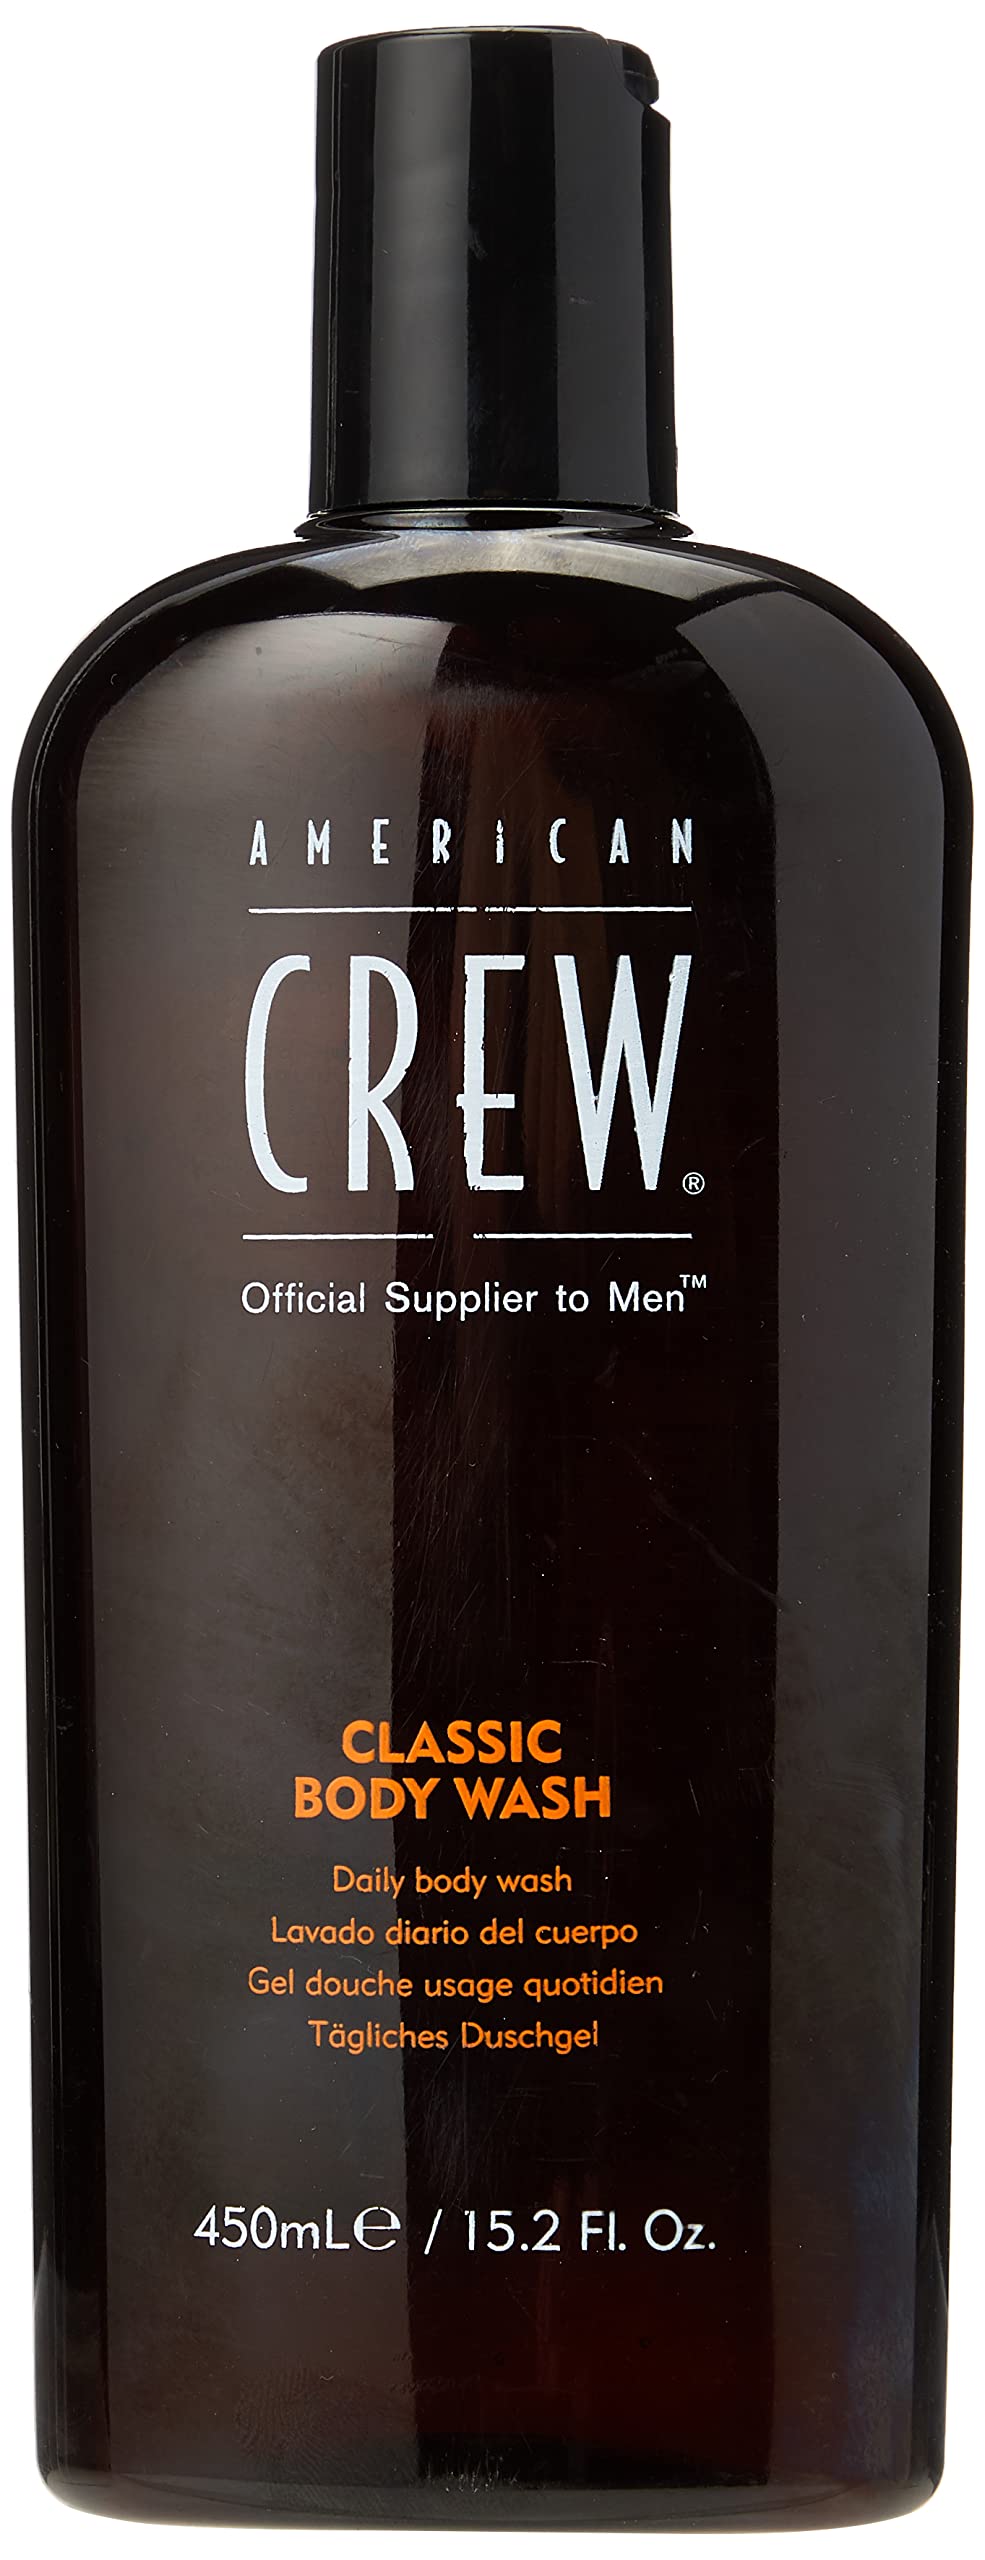 Body Wash for Men by American Crew, Tea Tree Leaf Oil, 15.2 Fl Oz